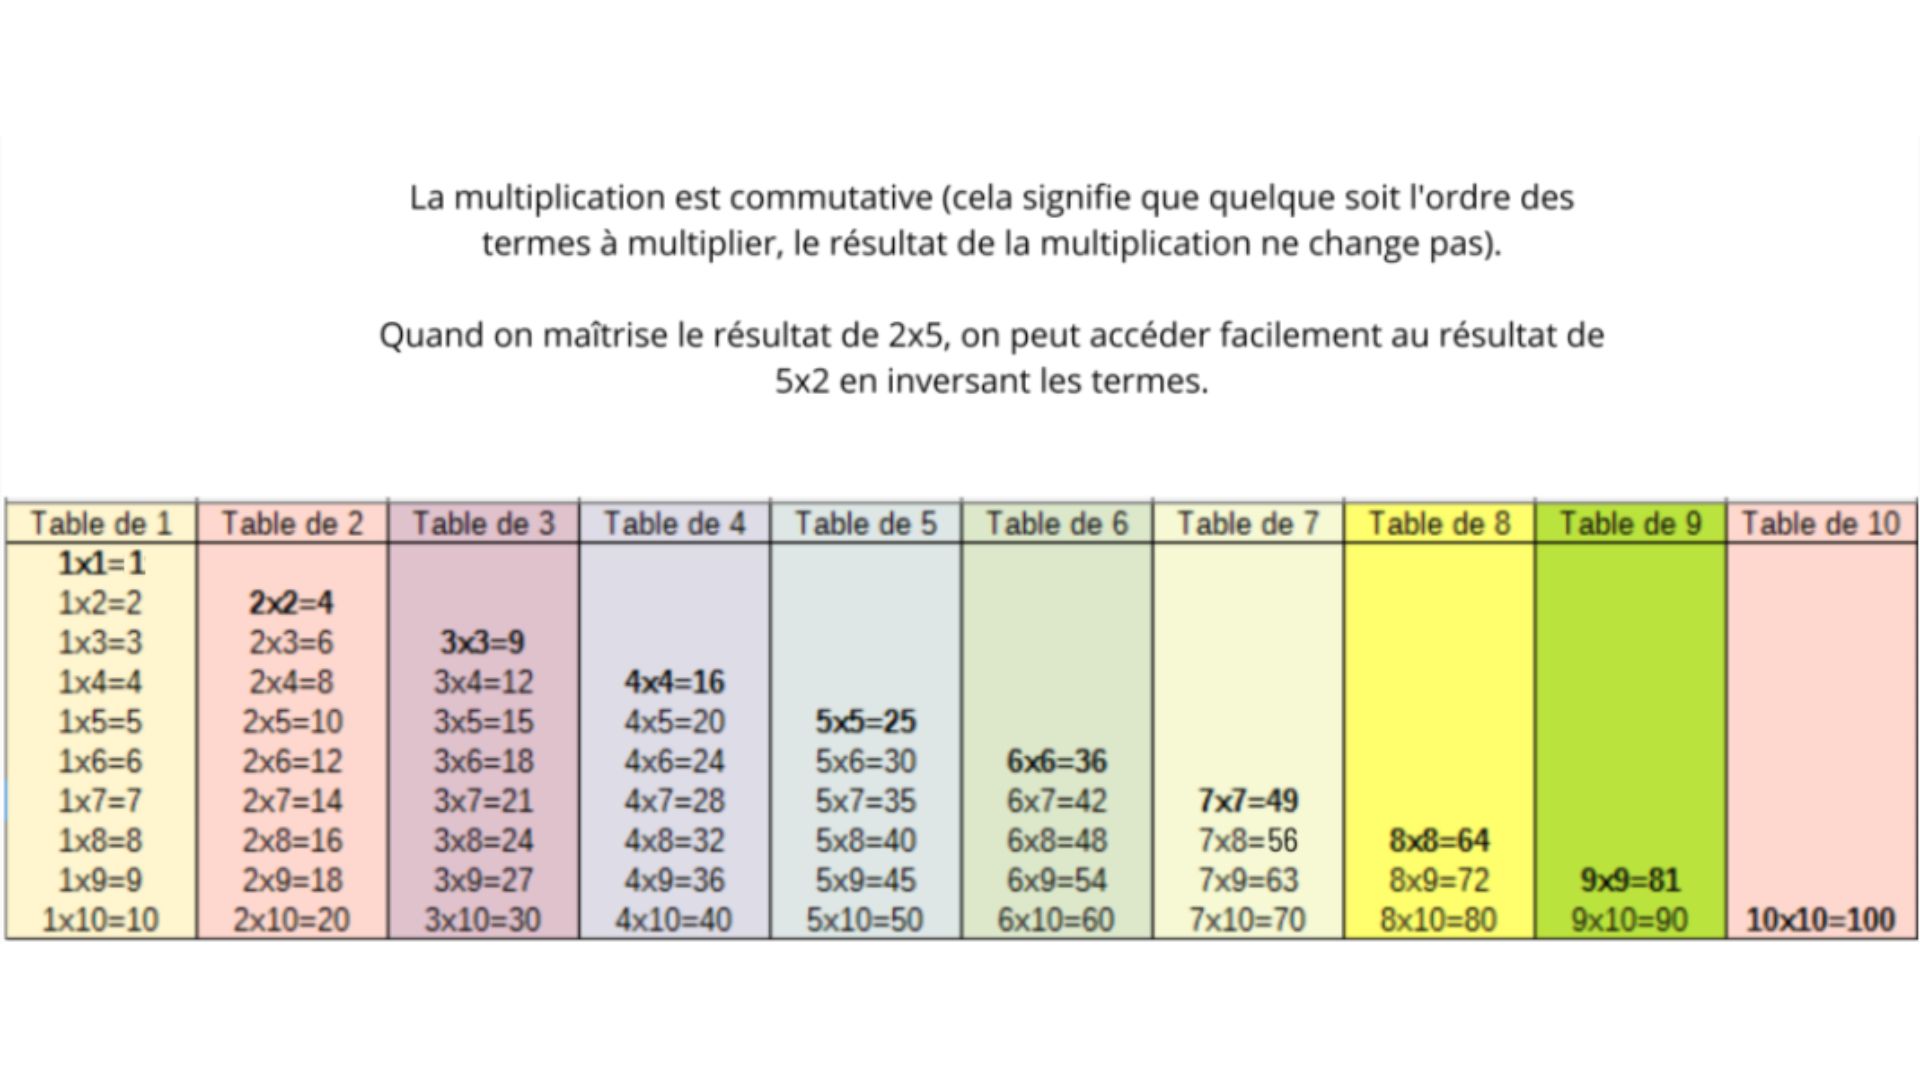 https://apprendre-reviser-memoriser.fr/wp-content/uploads/2020/12/apprendre-tables-de-multiplication.jpg